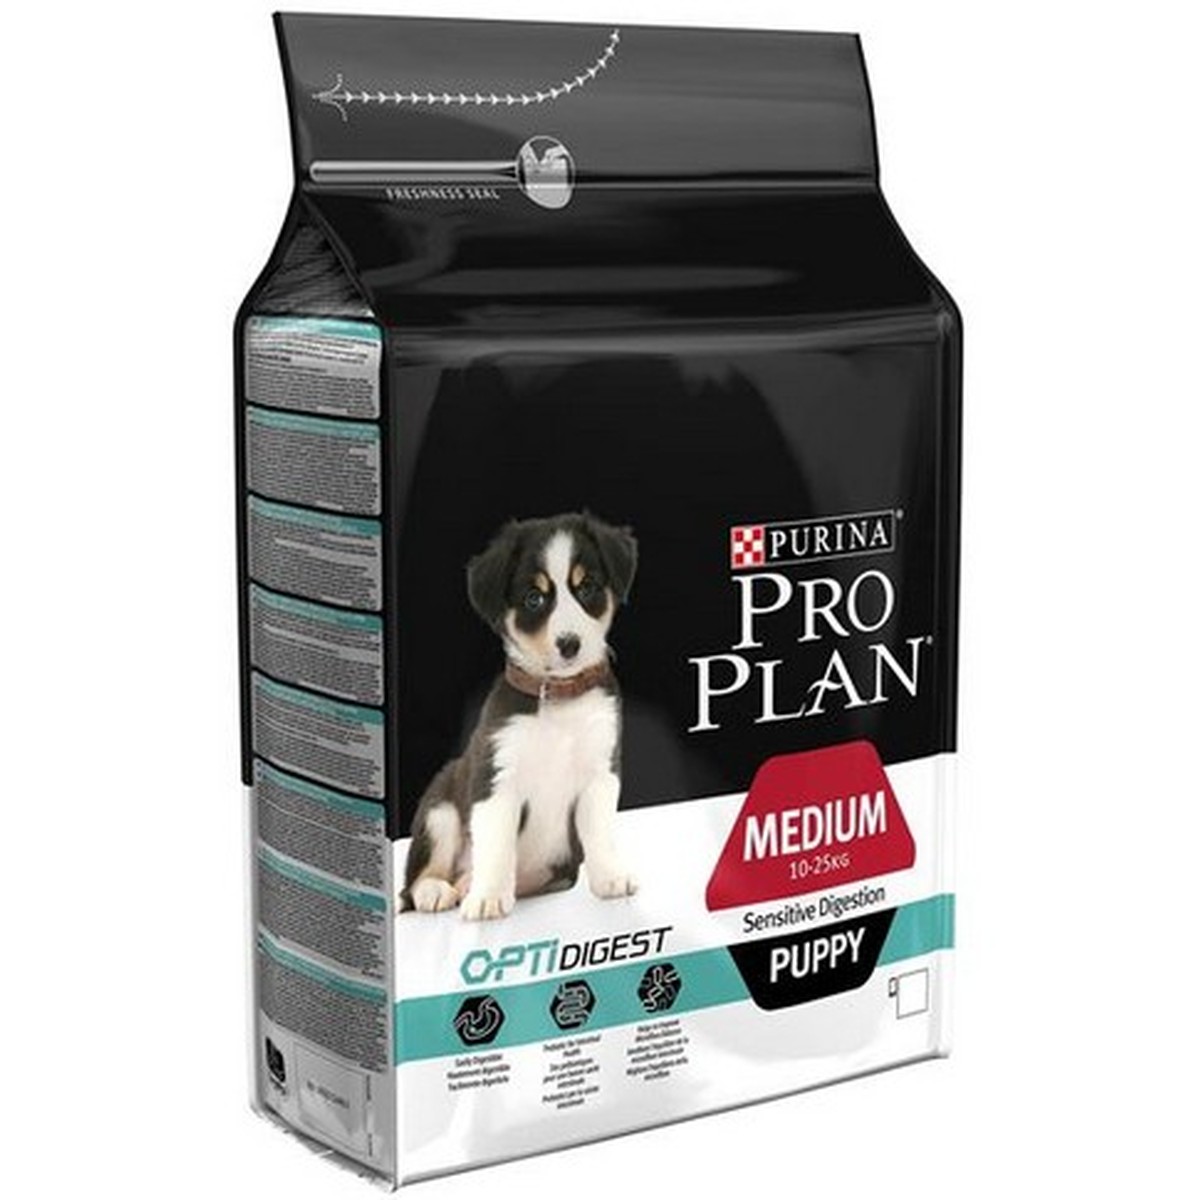   Proplan dog MEDIUM PUPPY SENSITIVE DIGESTION 3kg  3kg